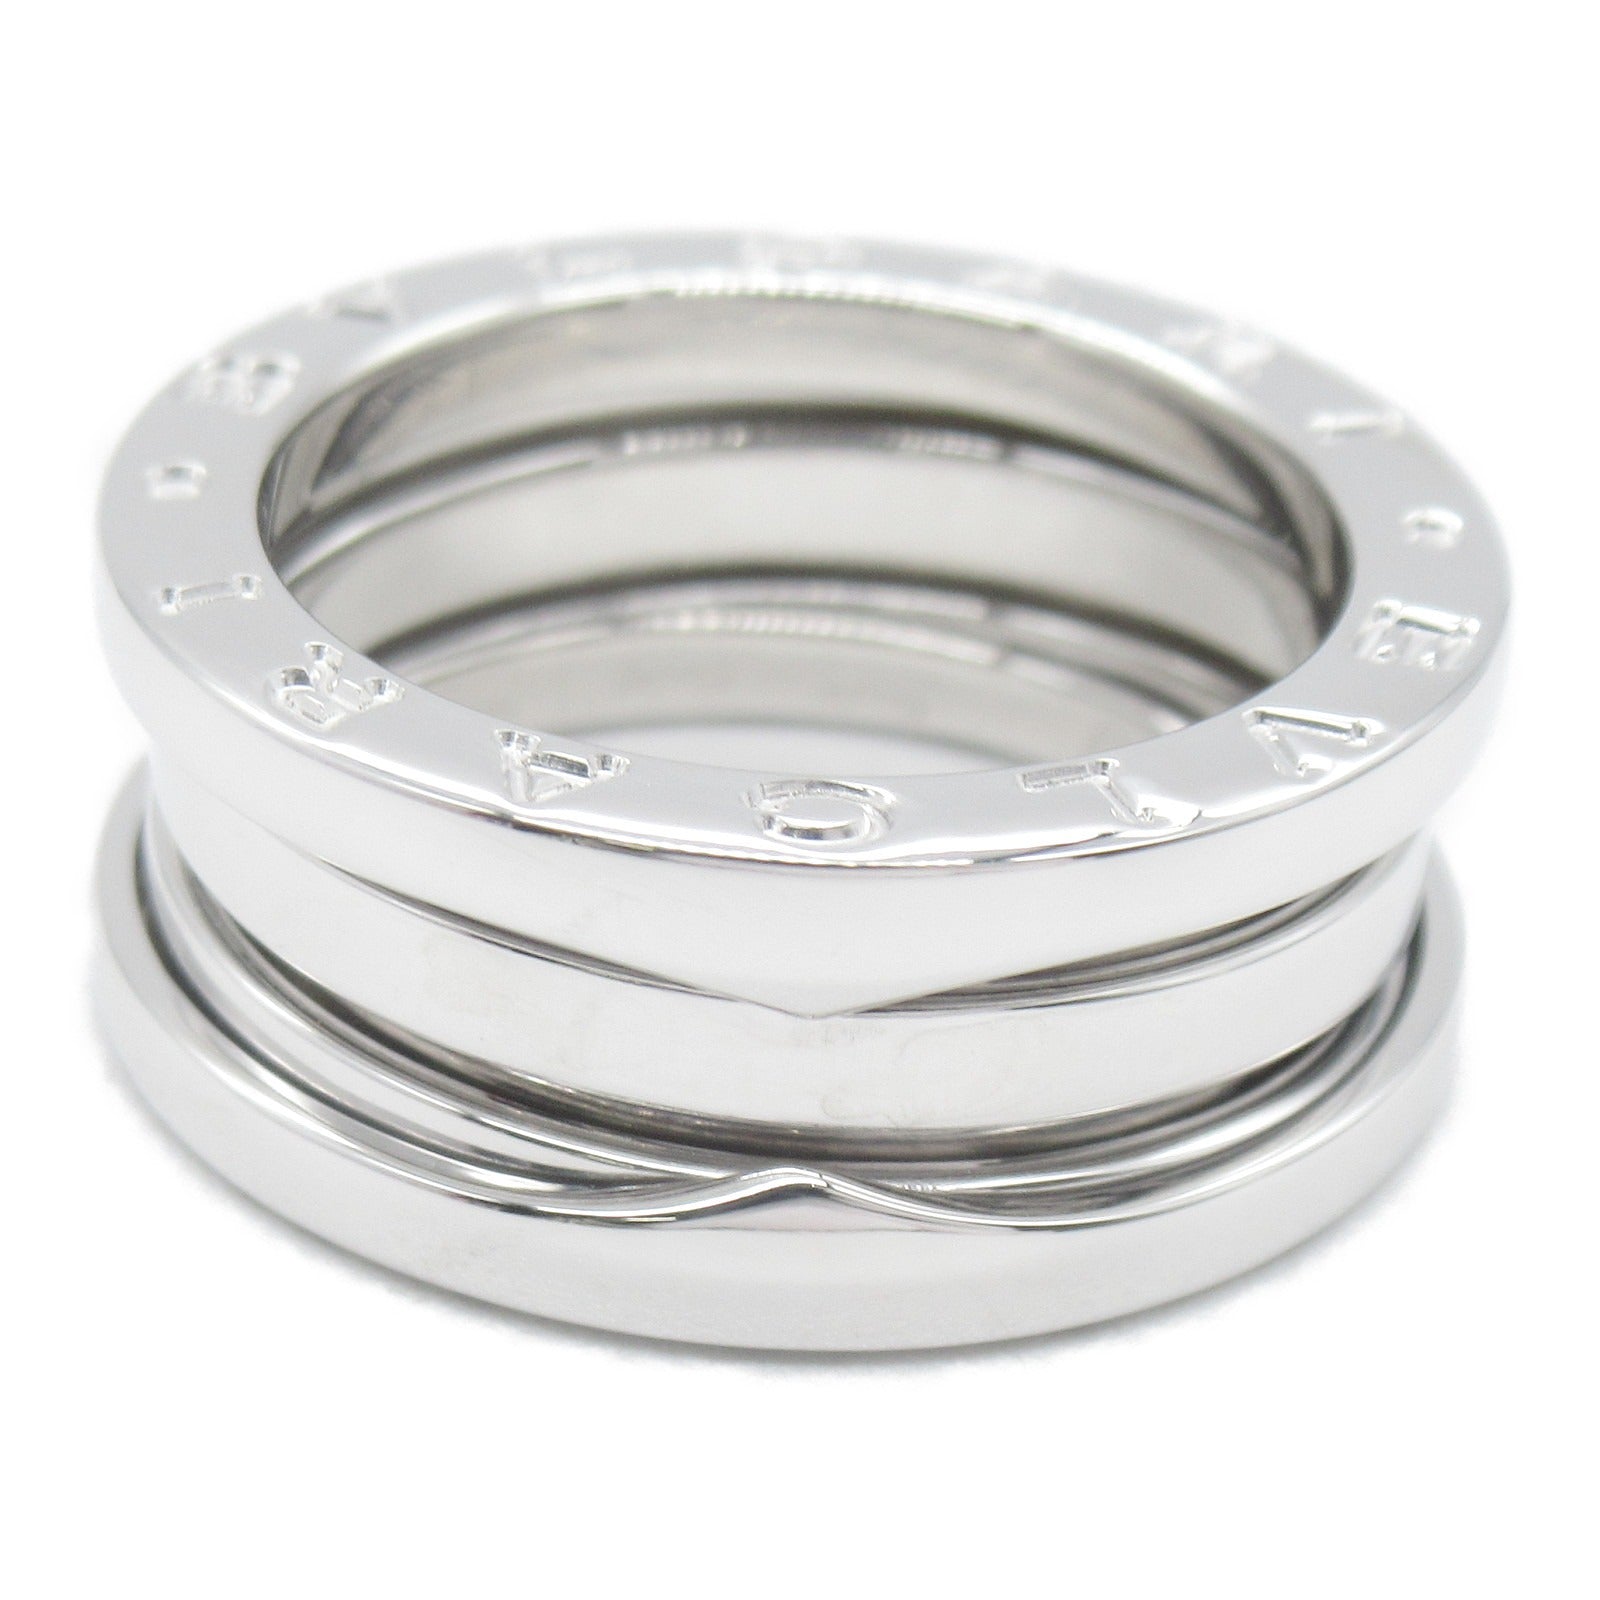 Bulgari BVLGARI B-zero1 Beezero One 3 Band Ring Ring Ring Ring Jewelry K18WG (White G)   Silver